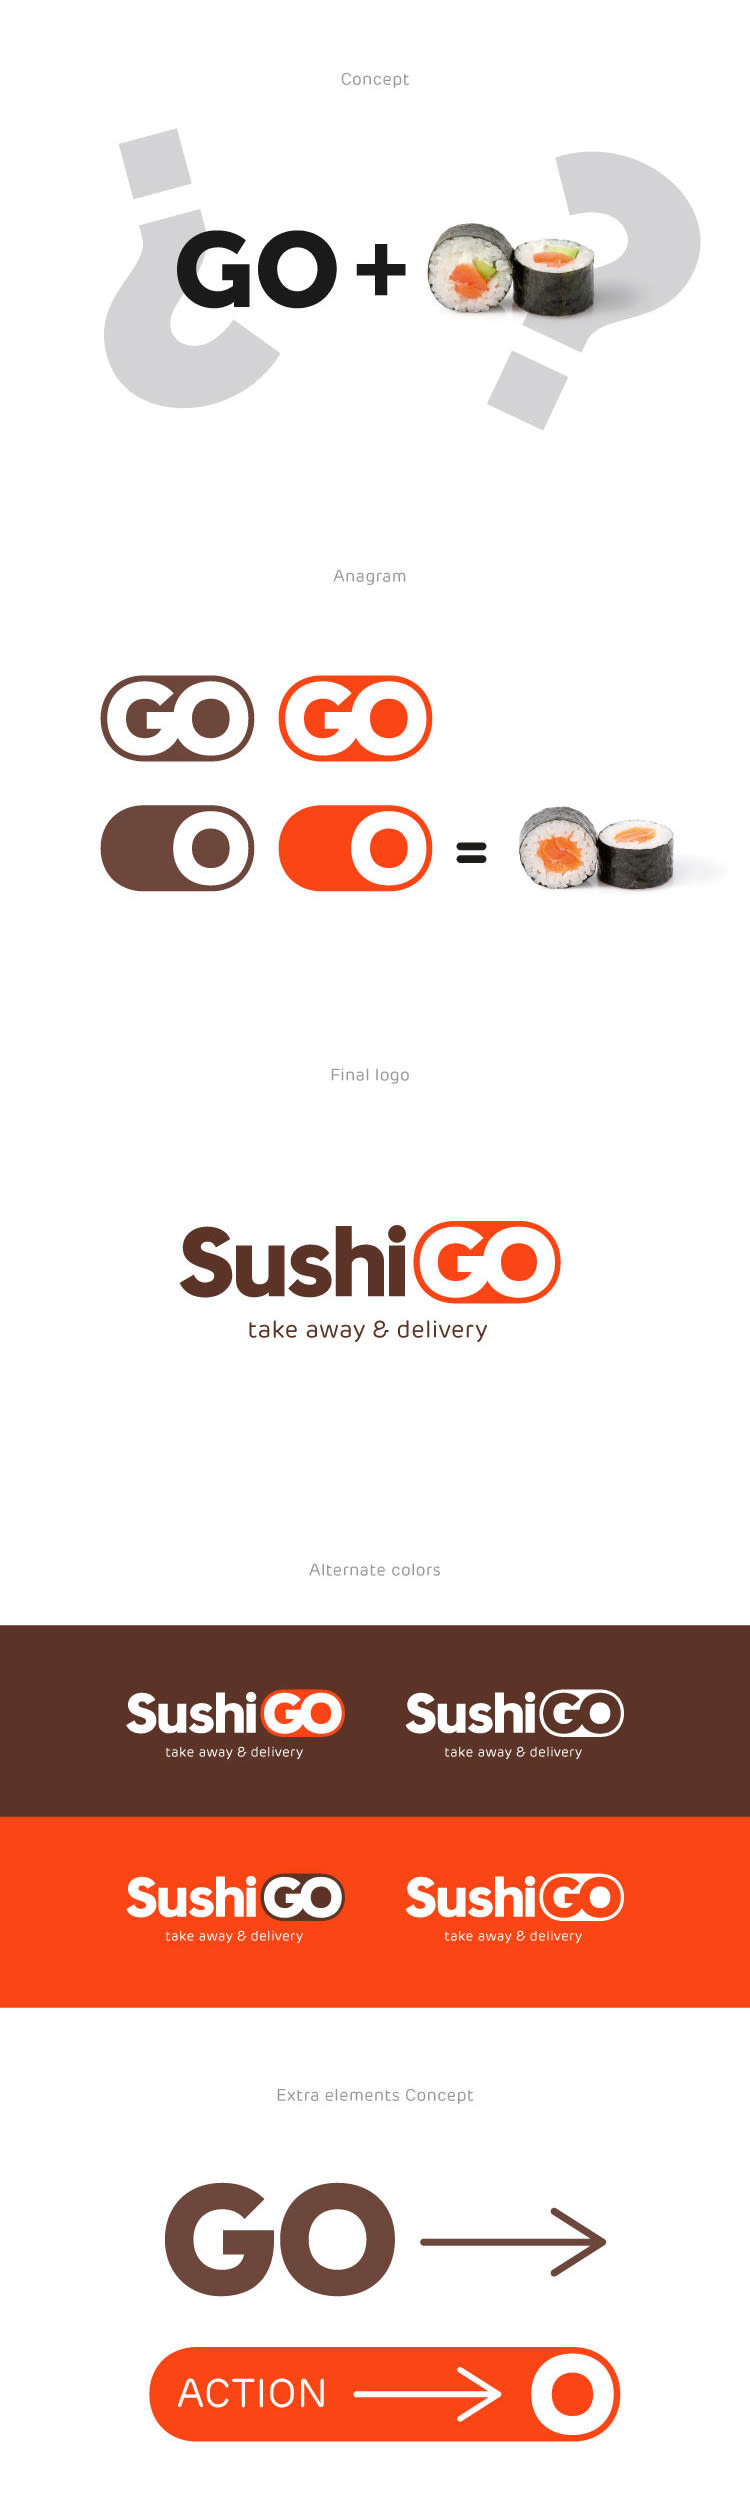 SushiGO 1